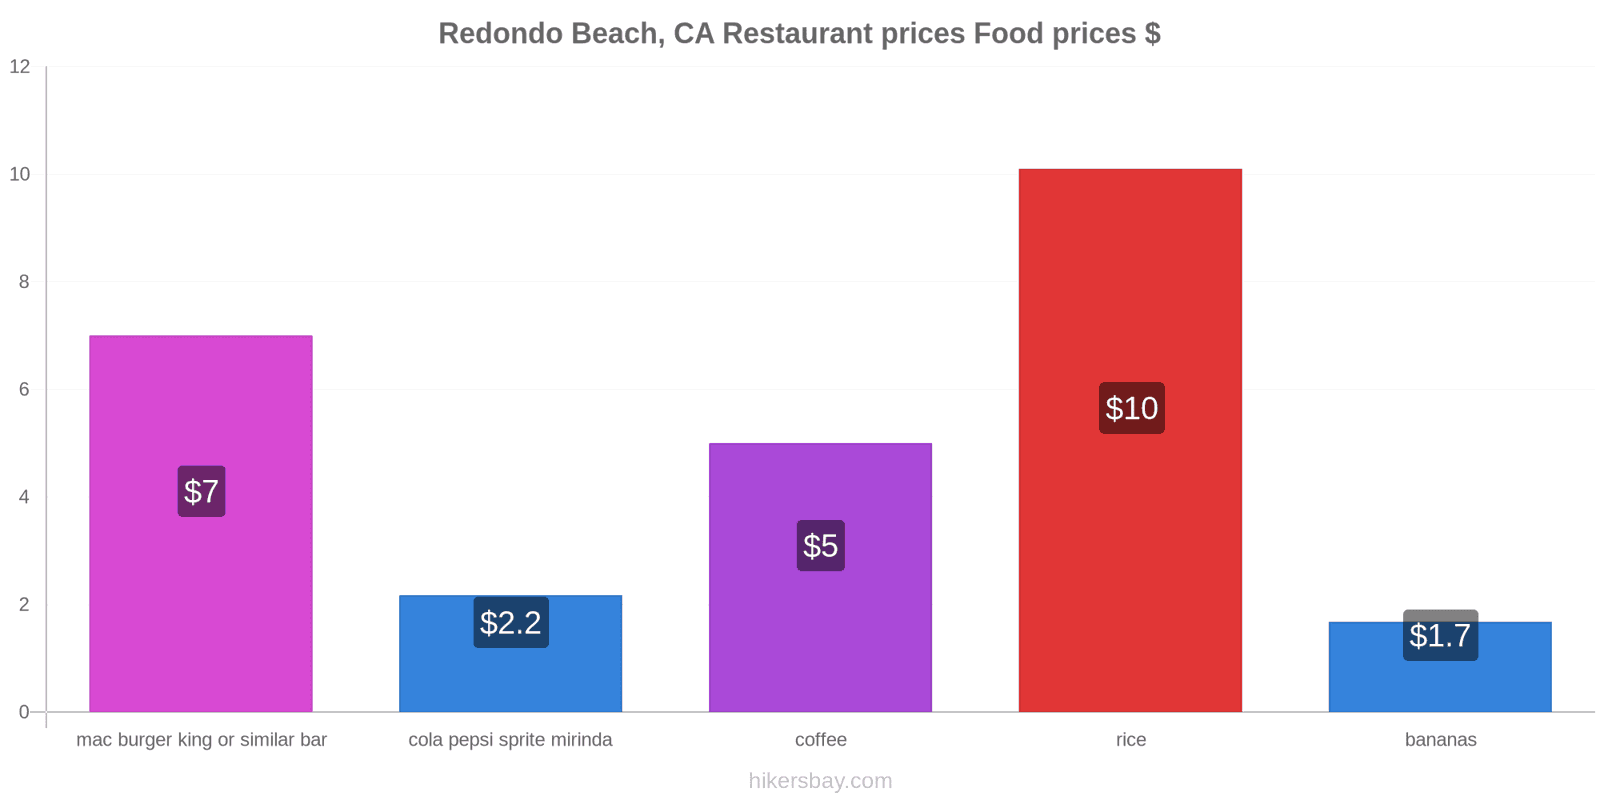 Redondo Beach, CA price changes hikersbay.com